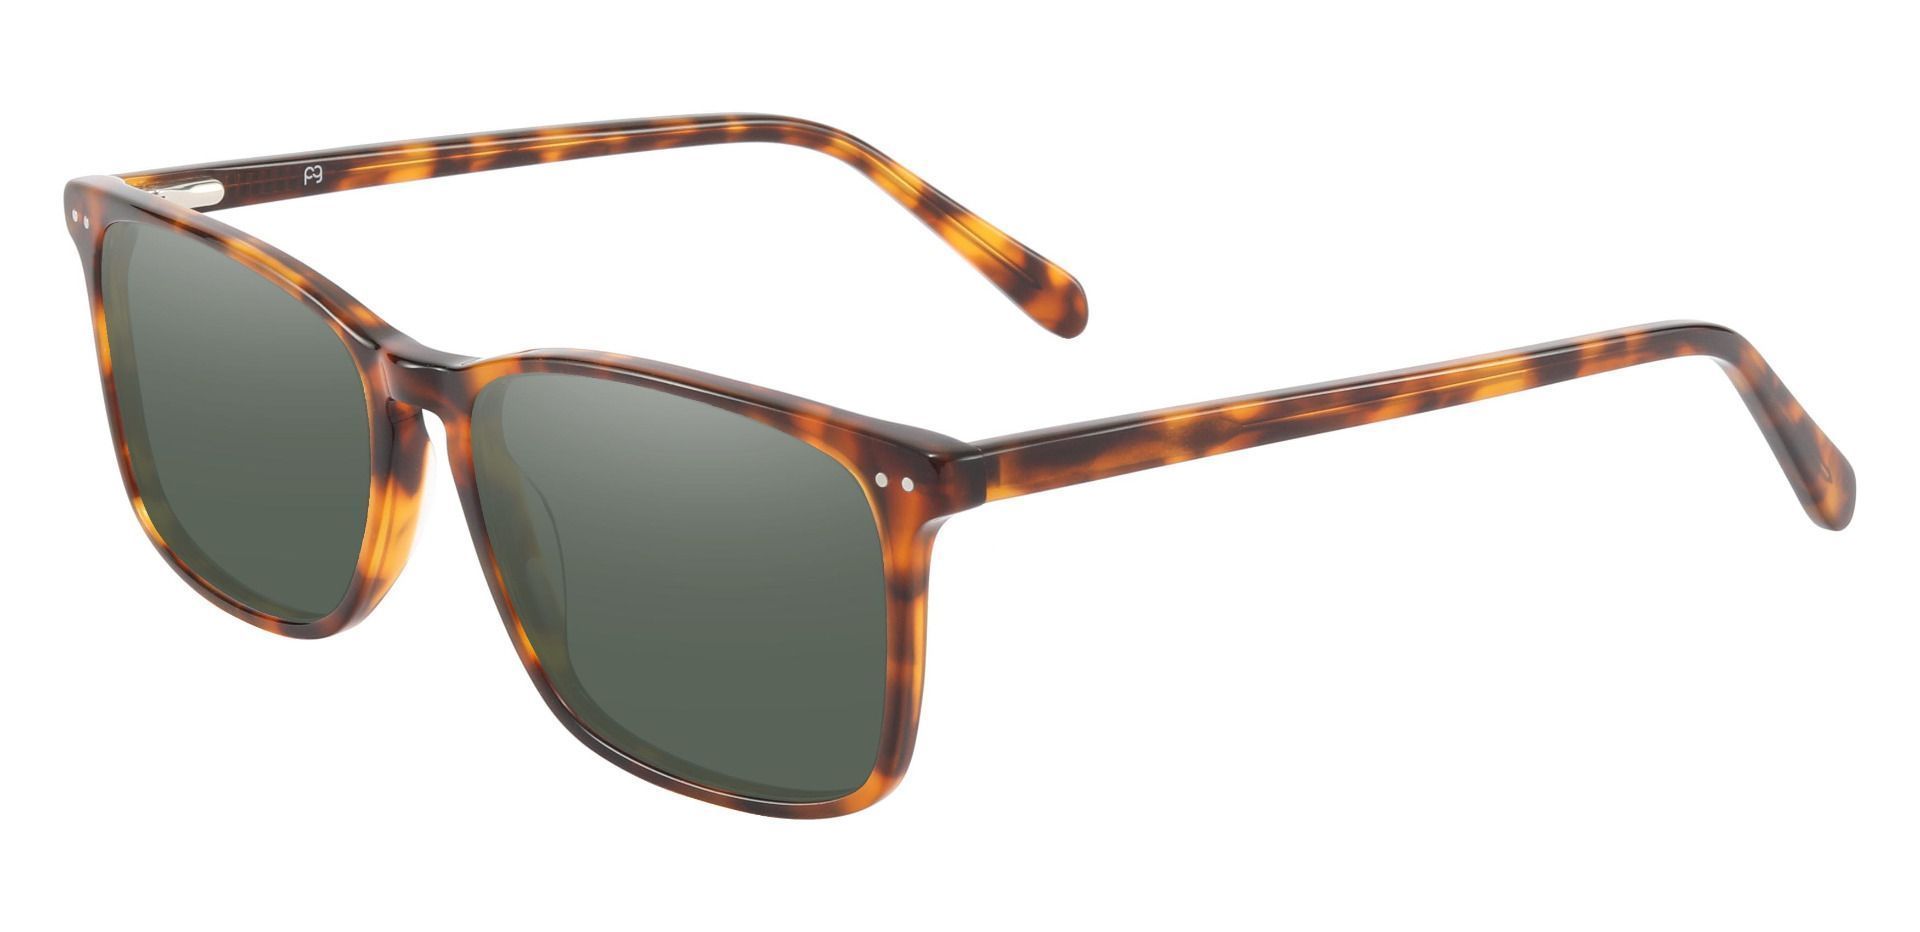 Finney Rectangle Lined Bifocal Sunglasses - Tortoise Frame With Green Lenses